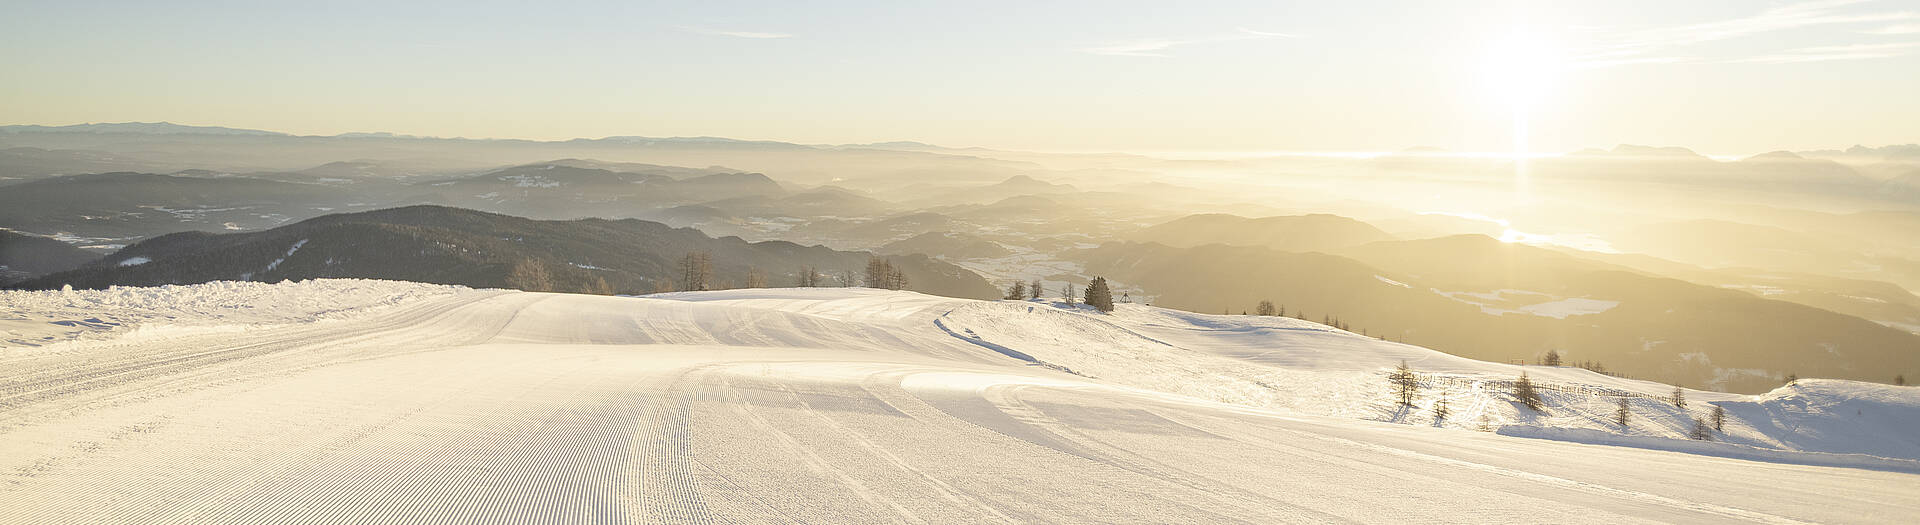 Gerlitzen_Ski-Alpin